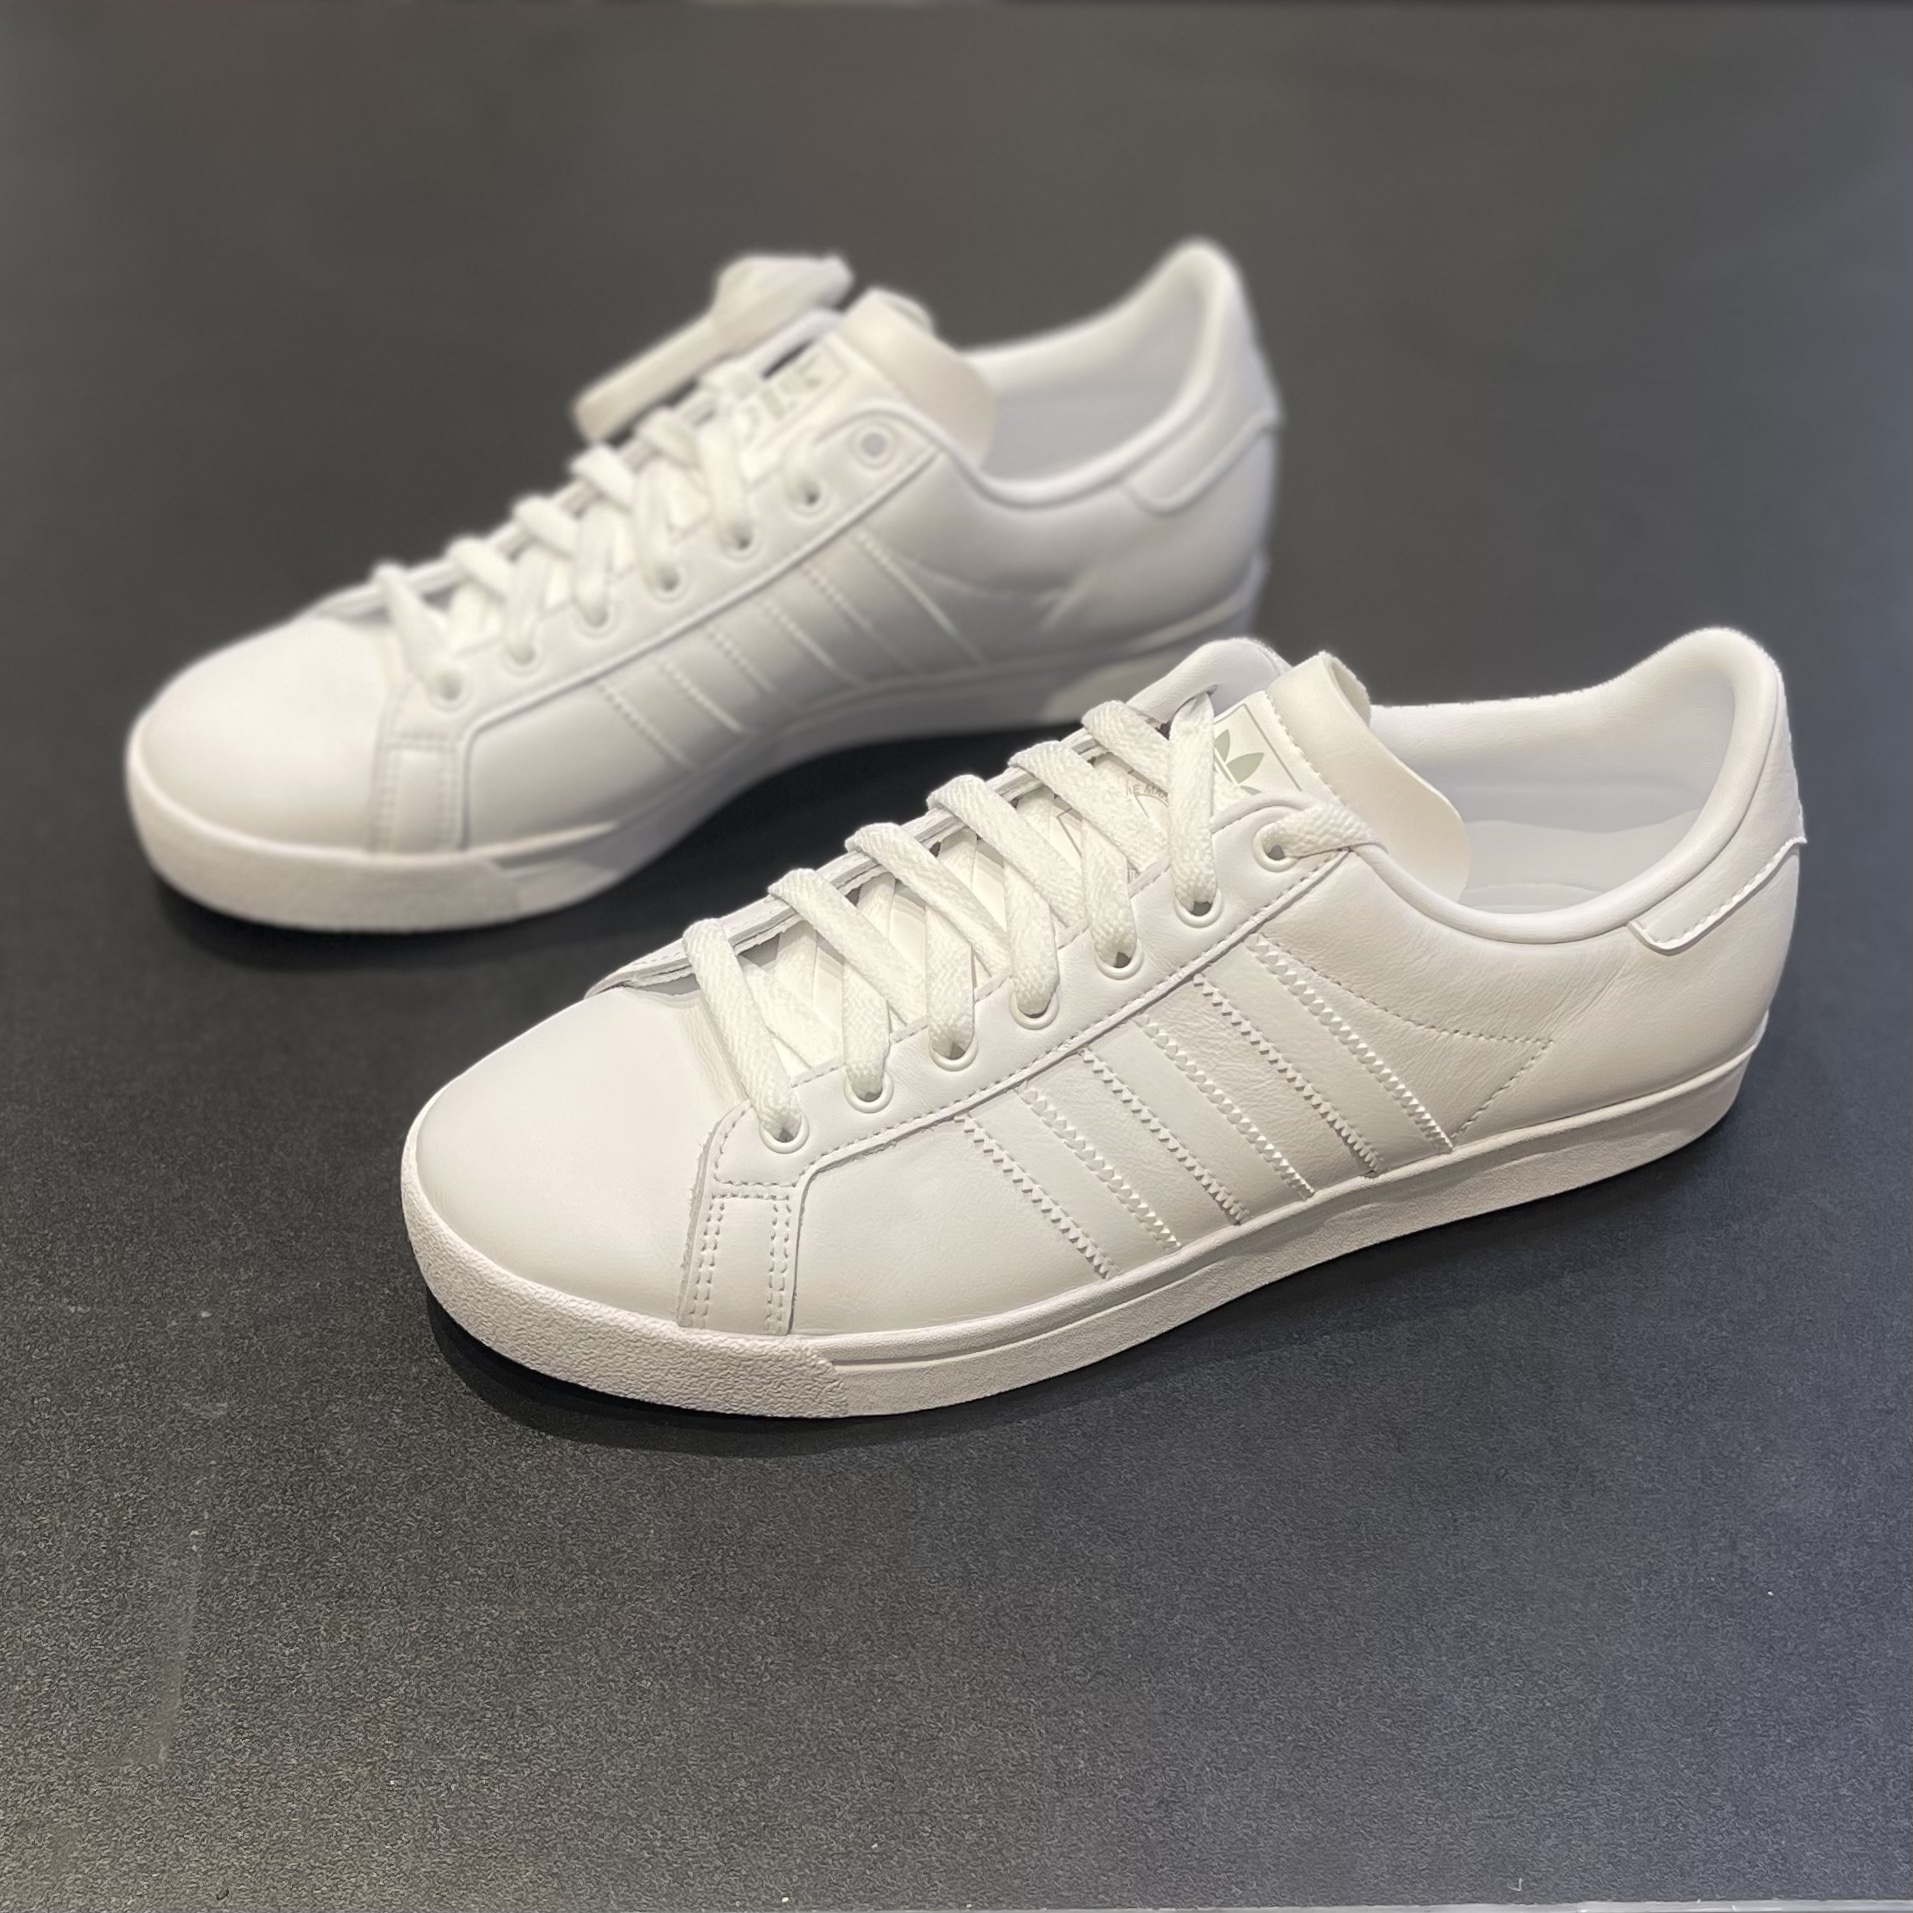 Adidas/阿迪达斯男子新款皮质小白鞋低帮透气运动休闲板鞋EE8903